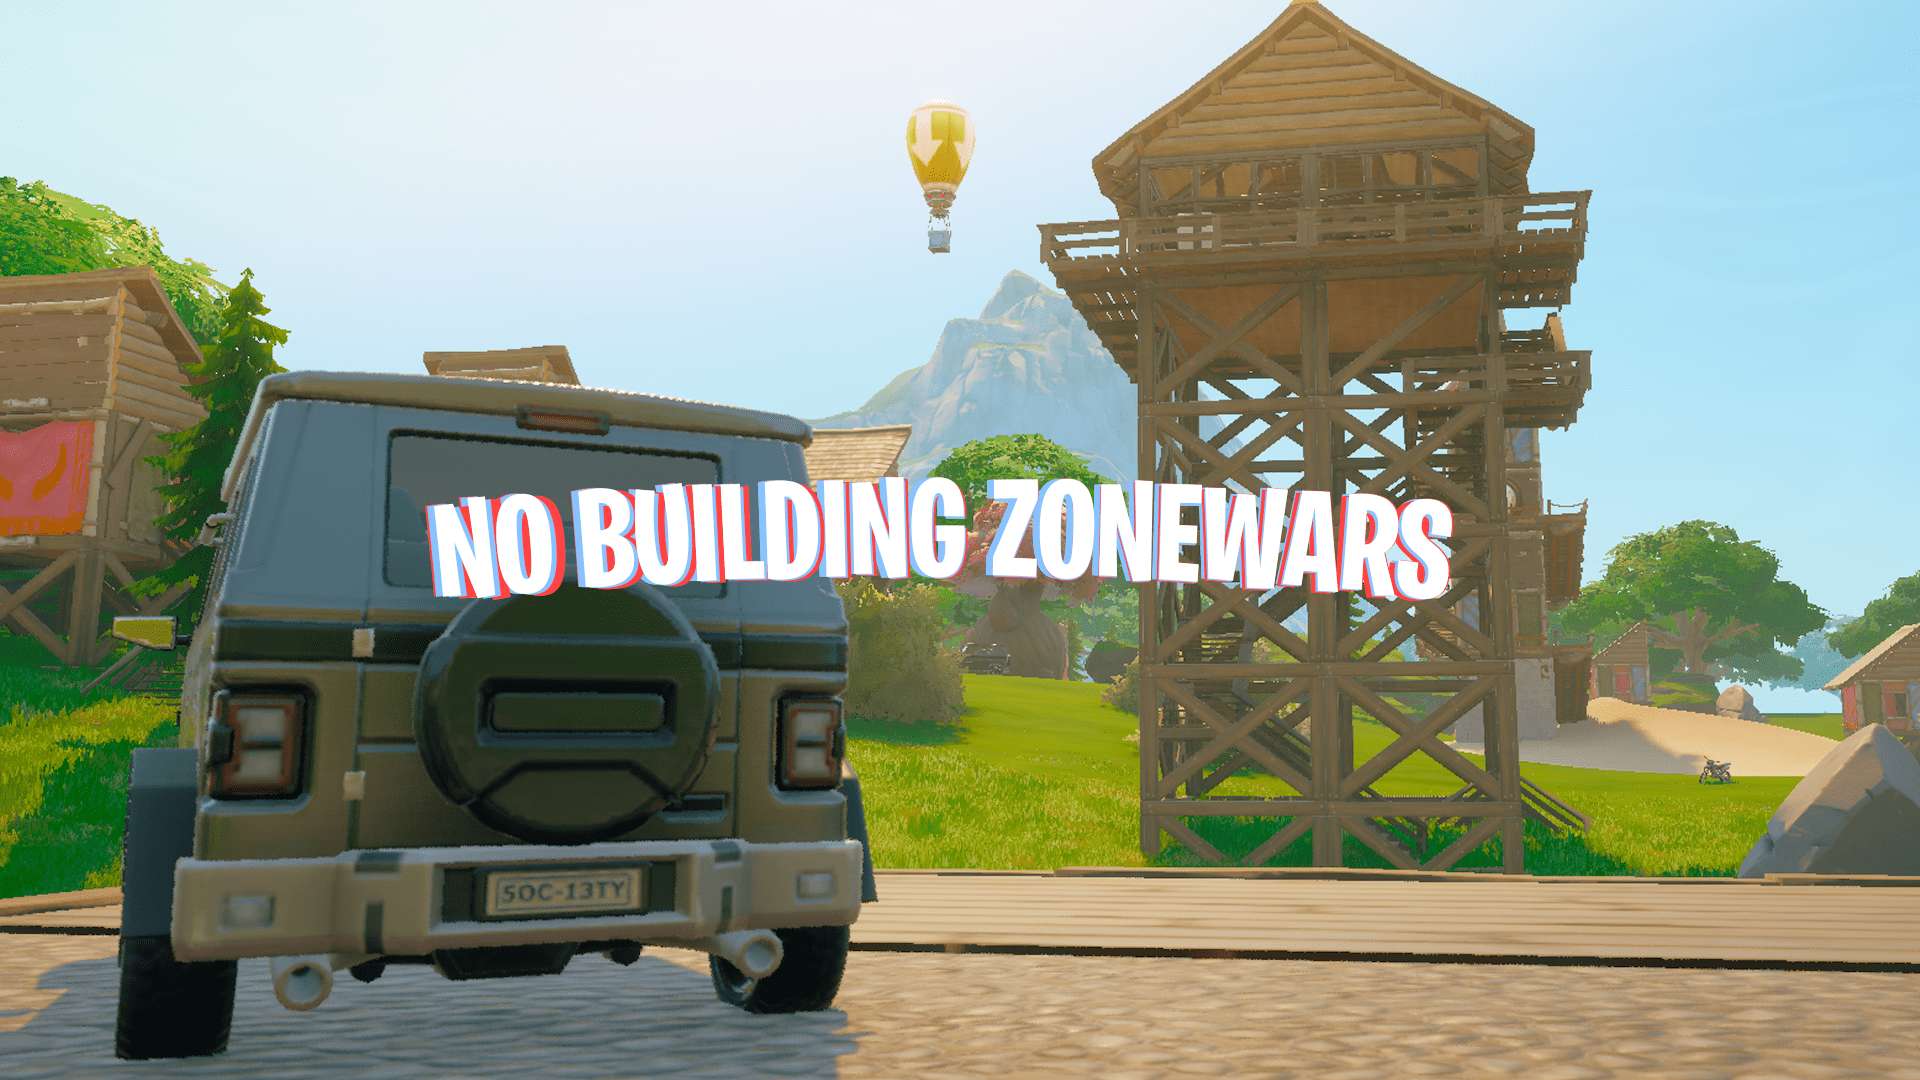 NO BUILDING ZONEWARS